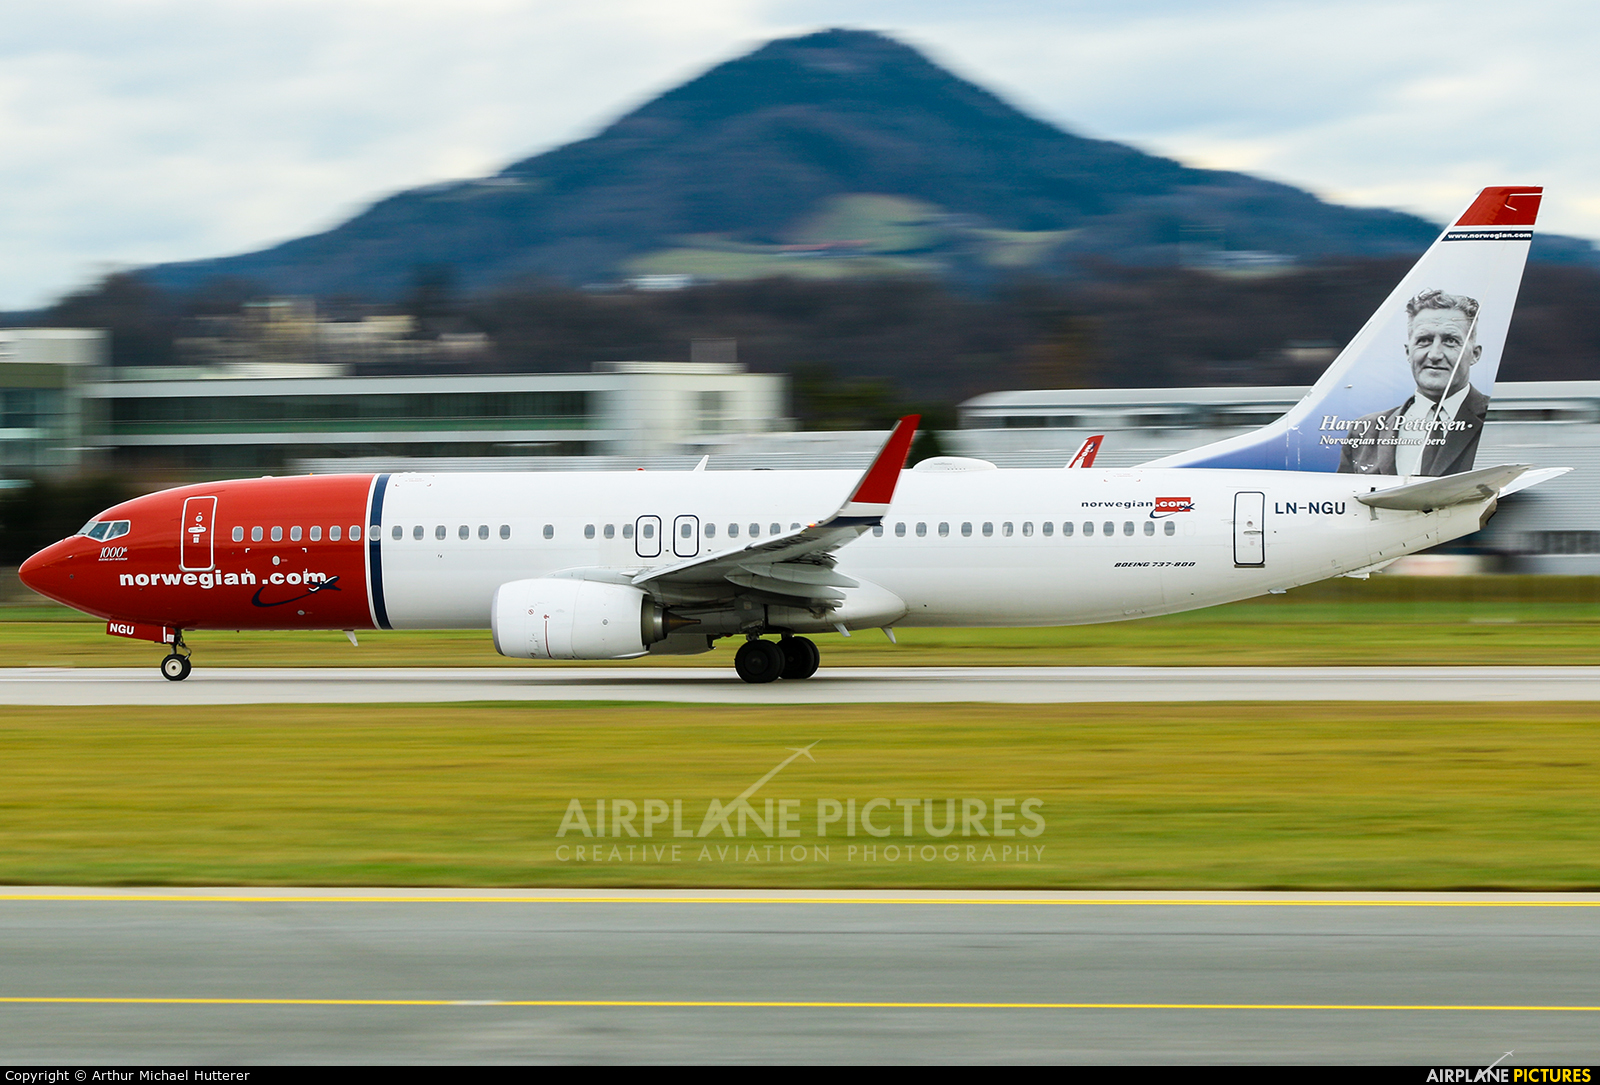 Norwegian Air Shuttle LN-NGU aircraft at Salzburg